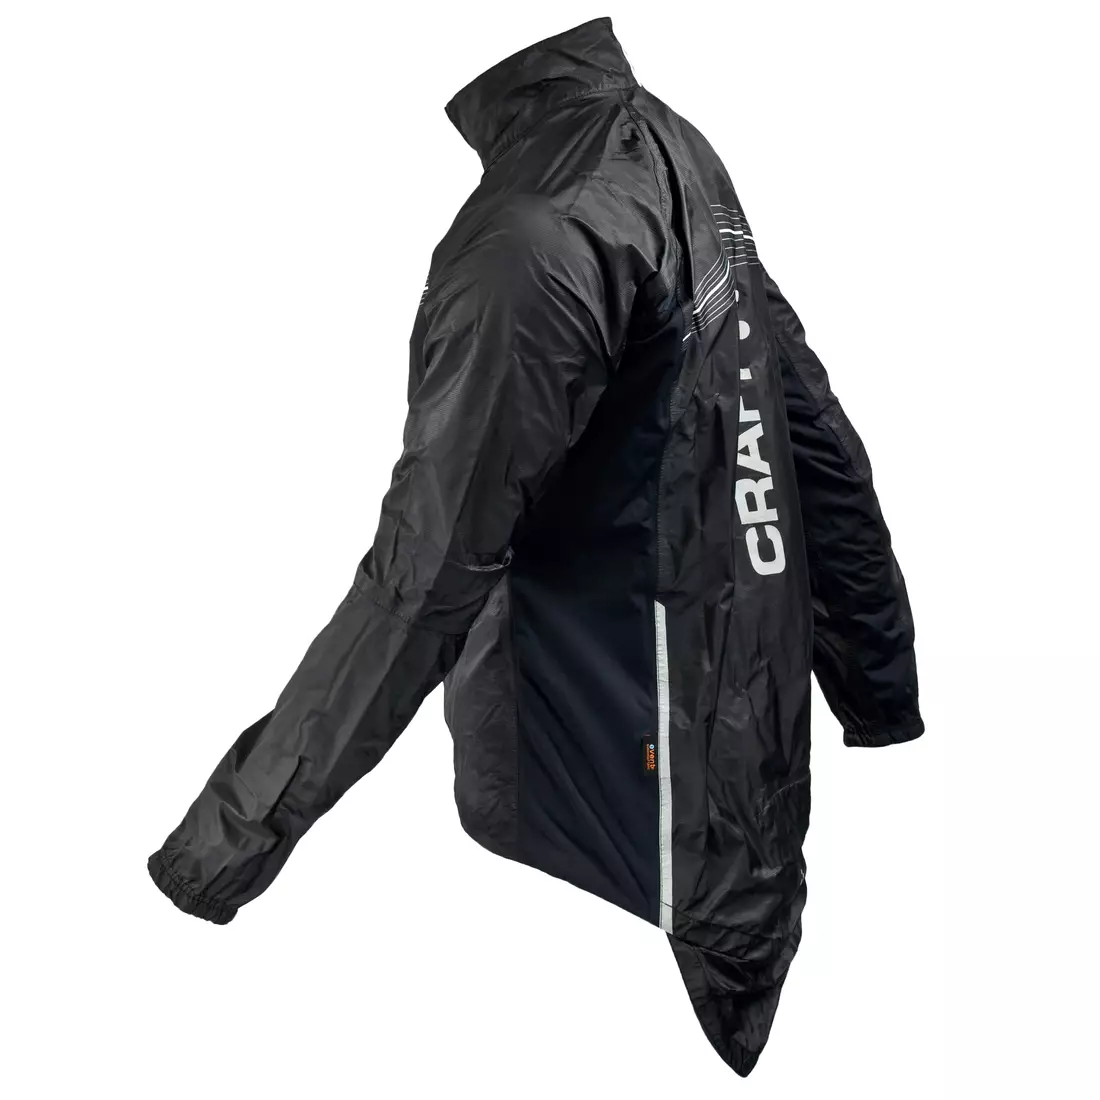 CRAFT ELITE BIKE - esőálló férfi kerékpáros kabát 1902576-9900, szín: fekete